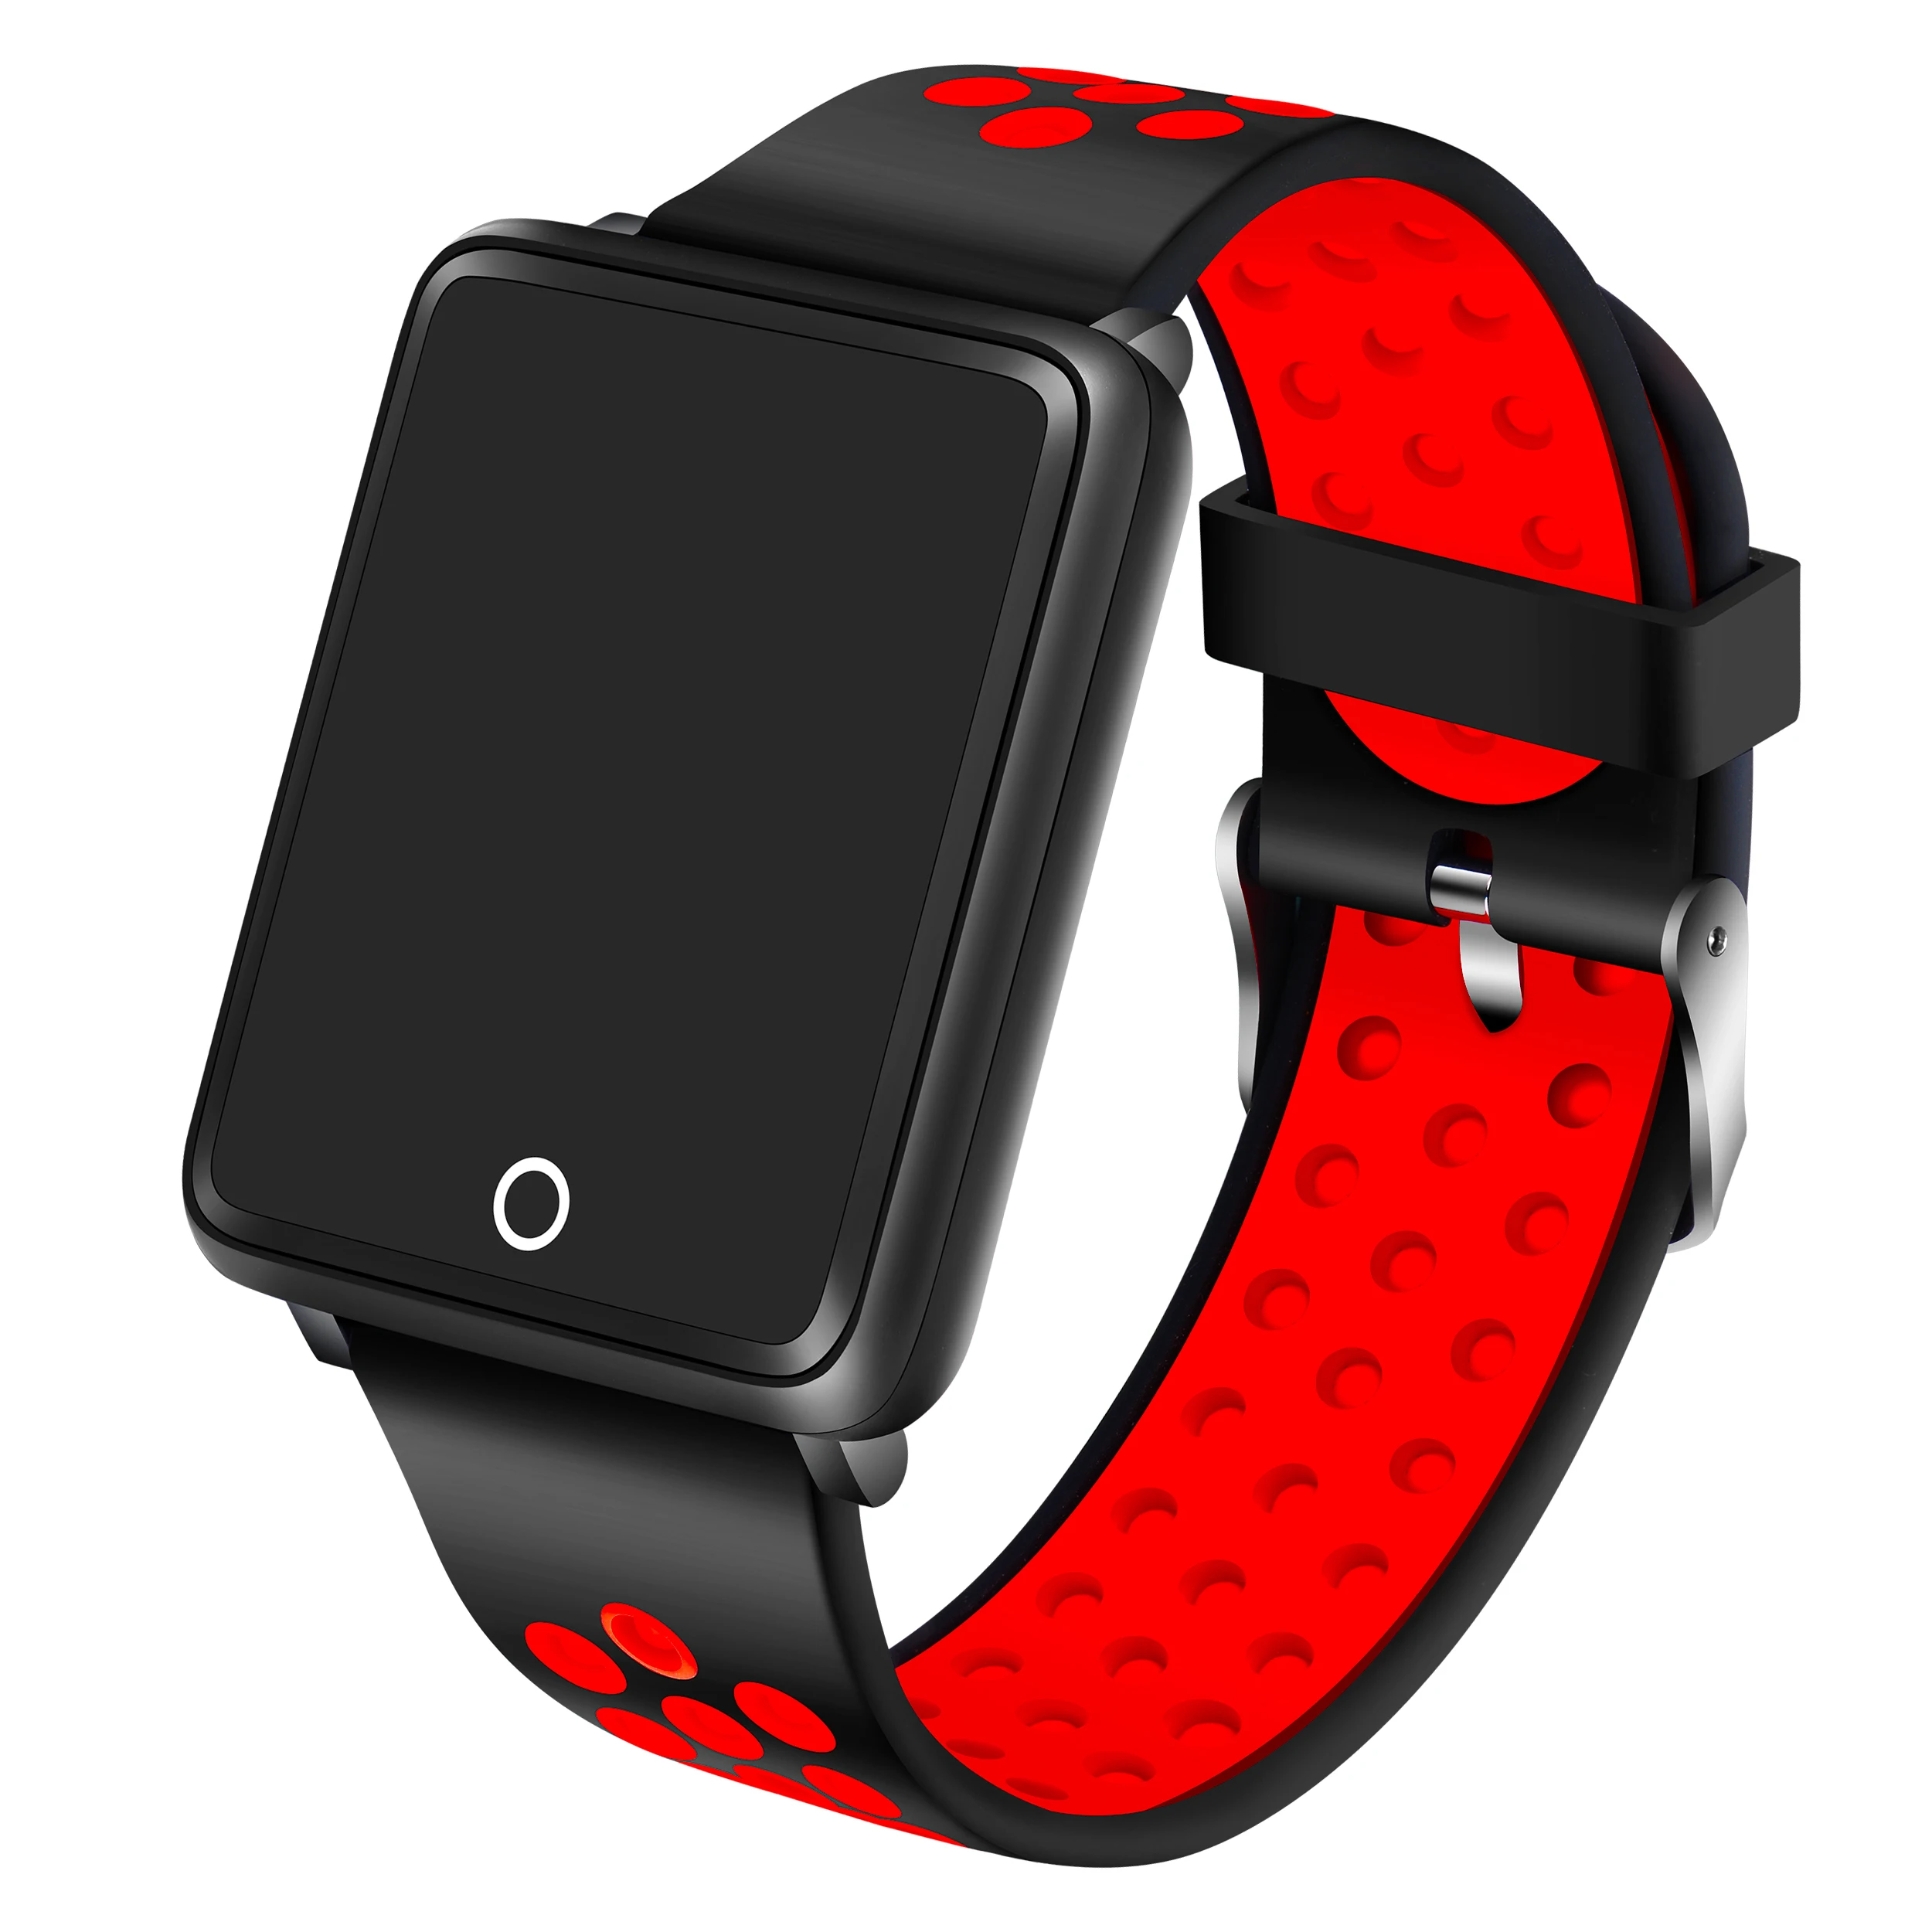 Смарт-браслетный ремешок для часов M3 ремень цвета: черный, красный, розовый синий шесть цветов для BW0020 BW0032 BW0036 браслет для смарт-часов